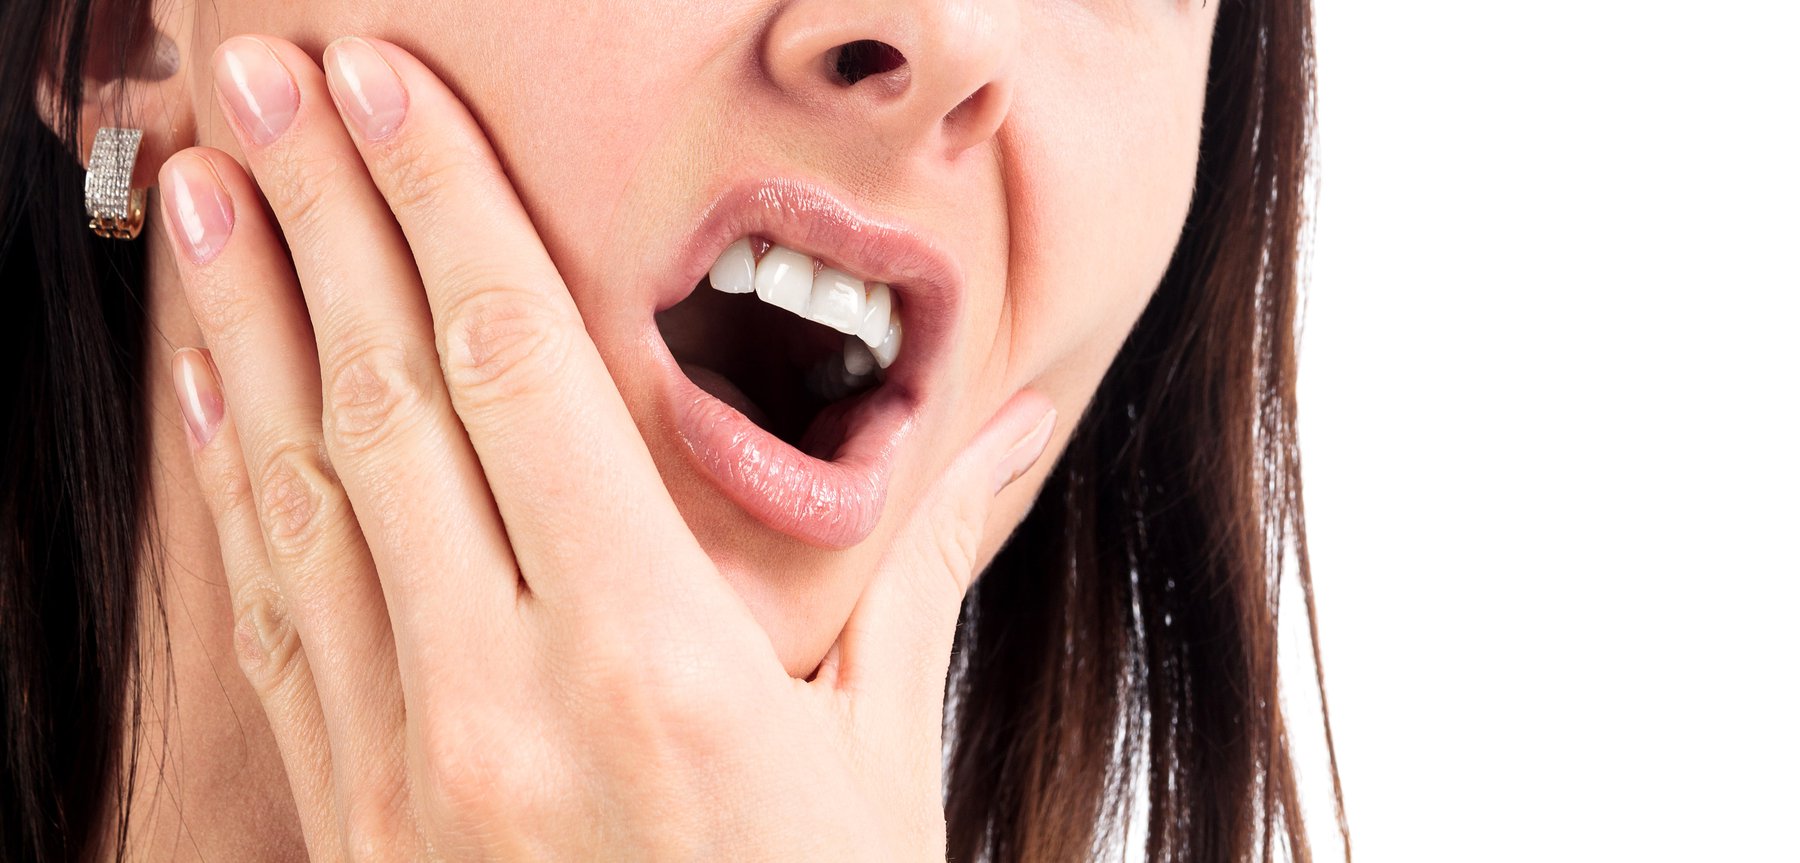 Mòn cổ răng - bệnh lý nha khoa phổ biến nhưng dễ bị bỏ qua